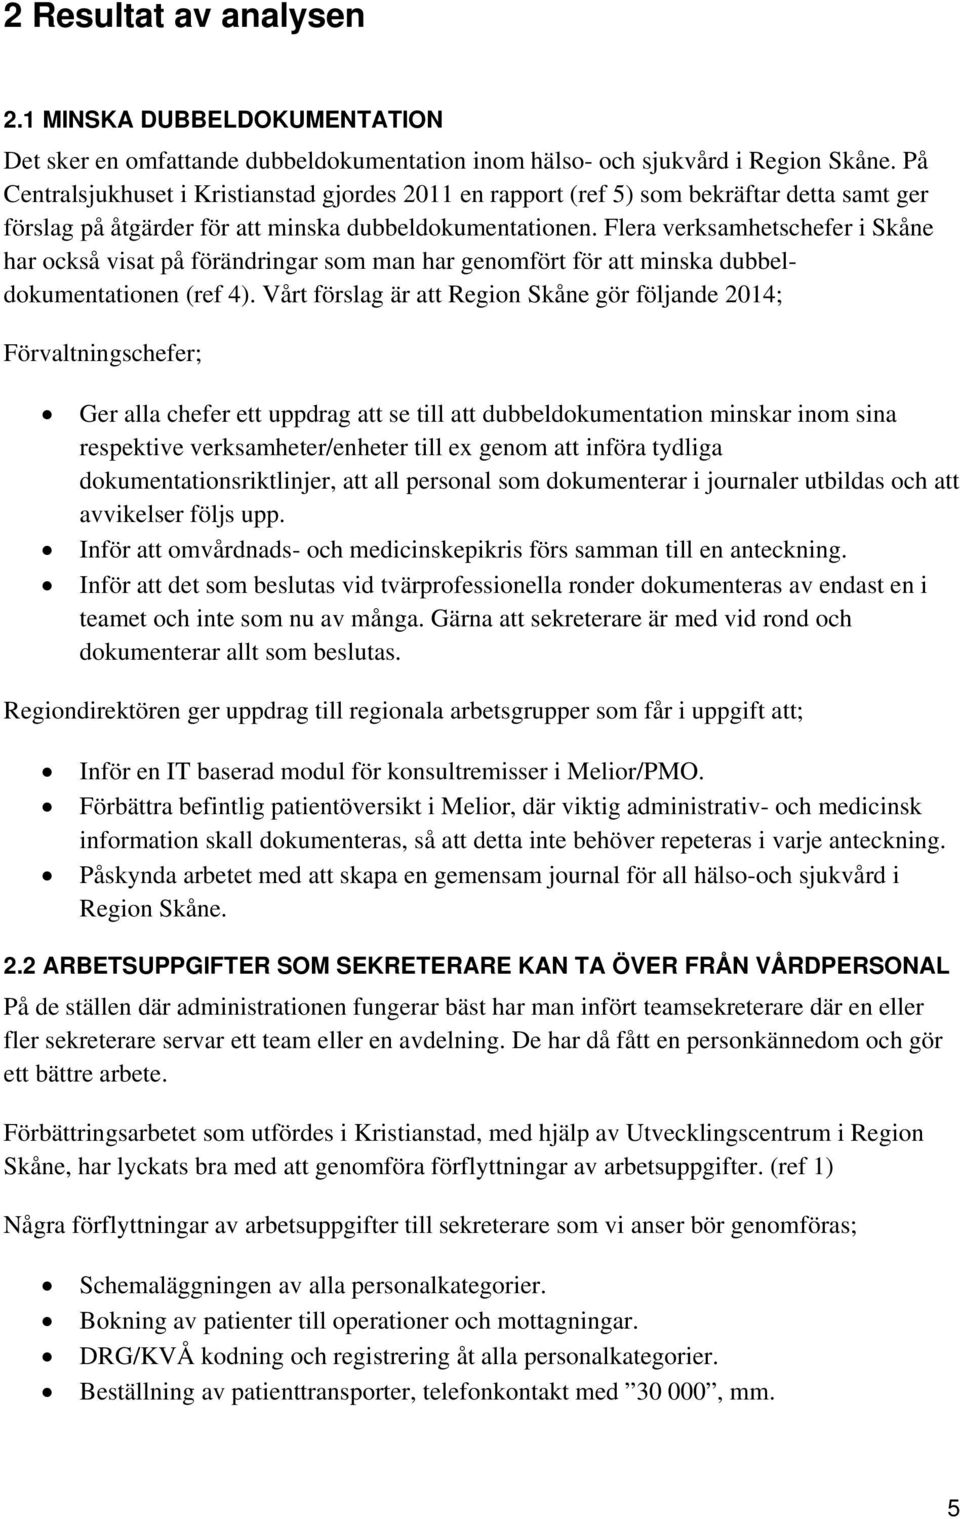 Flera verksamhetschefer i Skåne har också visat på förändringar som man har genomfört för att minska dubbeldokumentationen (ref 4).